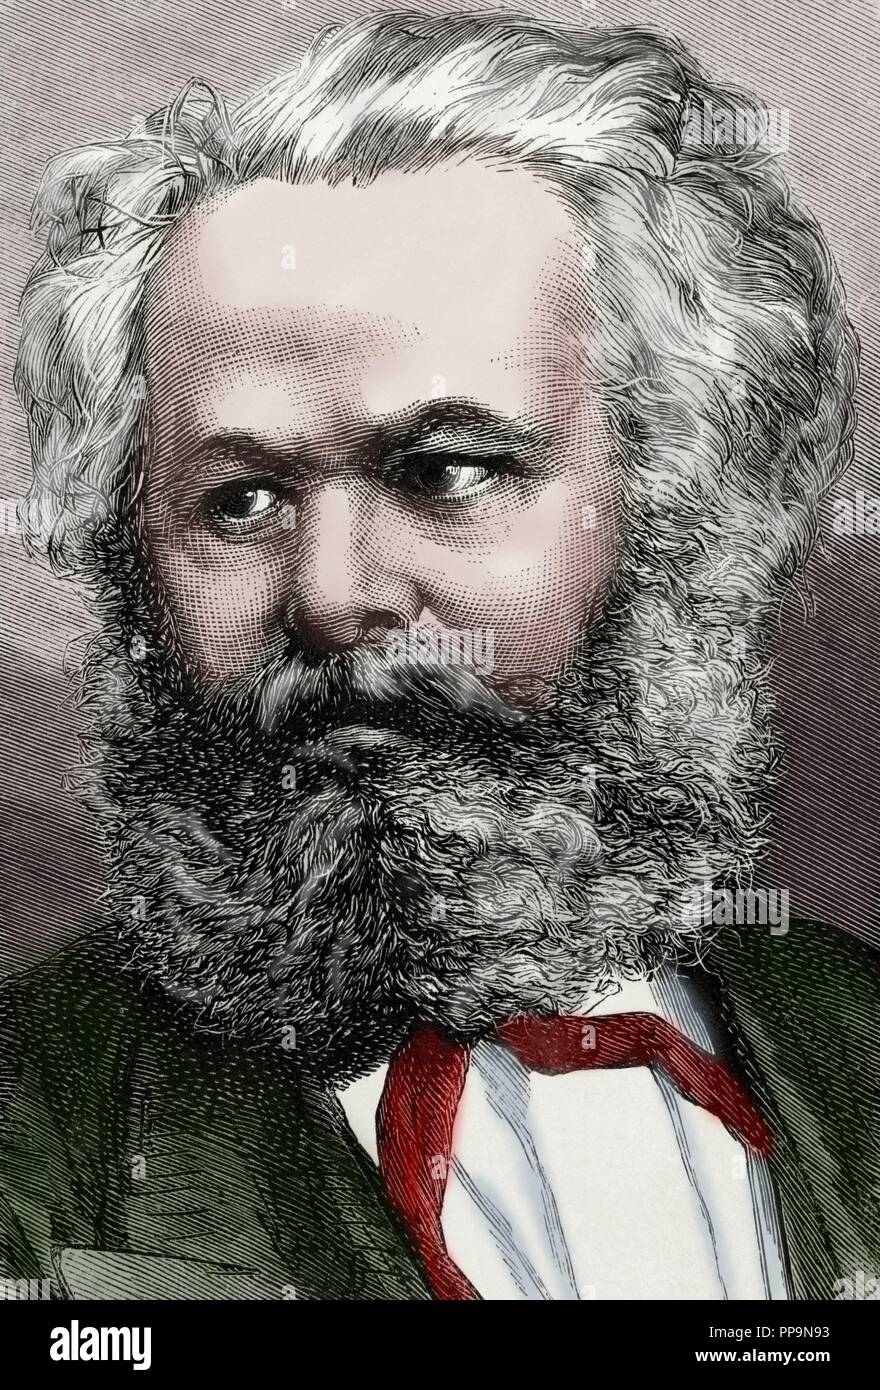 Karl Marx (1818-1883). Deutsche Philosoph, Volkswirt und kommunistischen. Porträt. Kupferstich von capuz. La Ilustracion Espanola y Americana, 1872. Gefärbt. Stockfoto